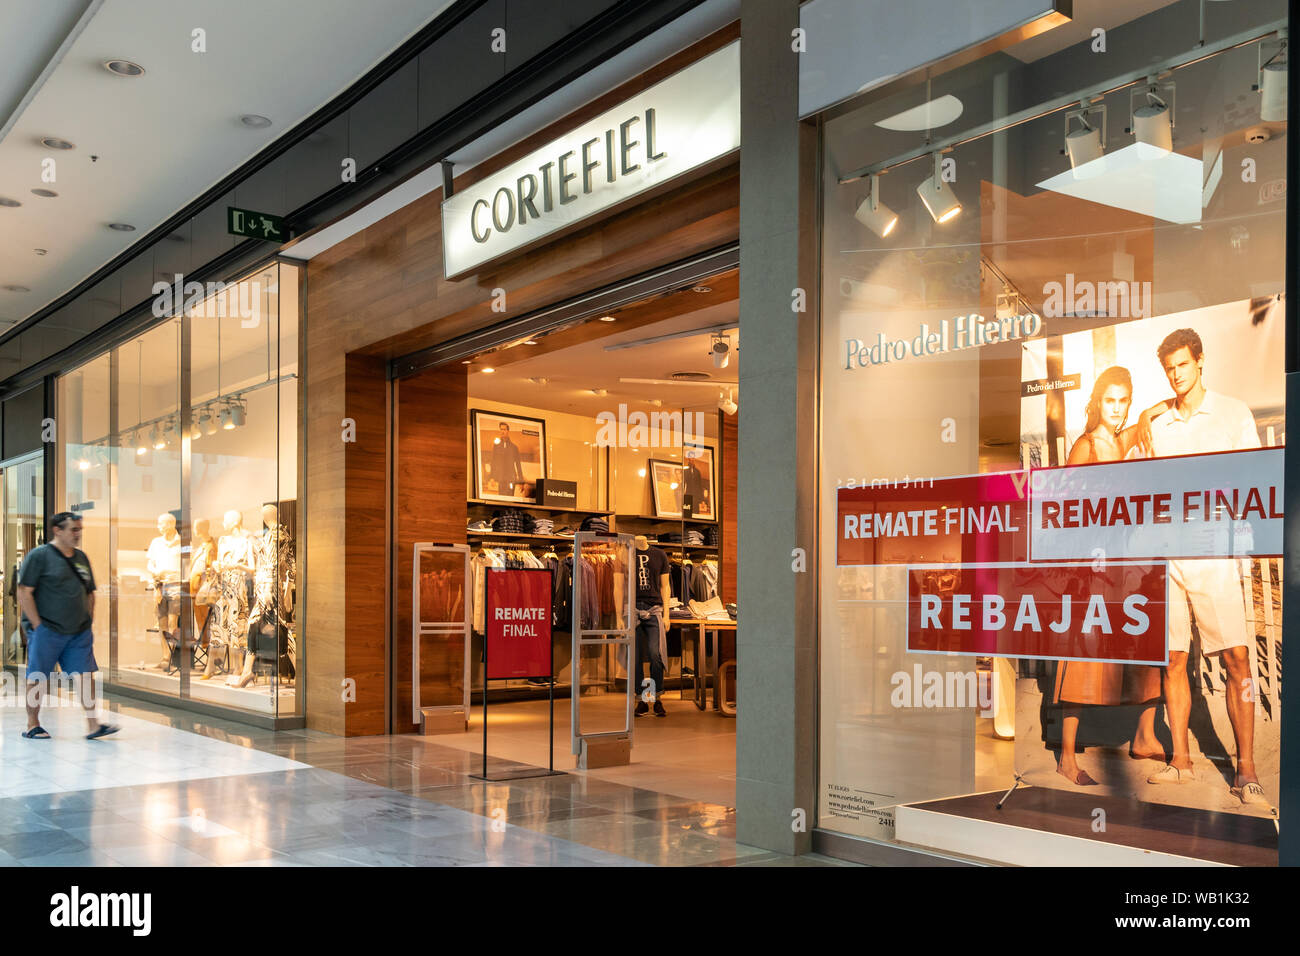 Santiago de Compostela, España; 22 de agosto de 2019: Cortefiel store en el centro comercial como Cancelas Fotografía de stock Alamy